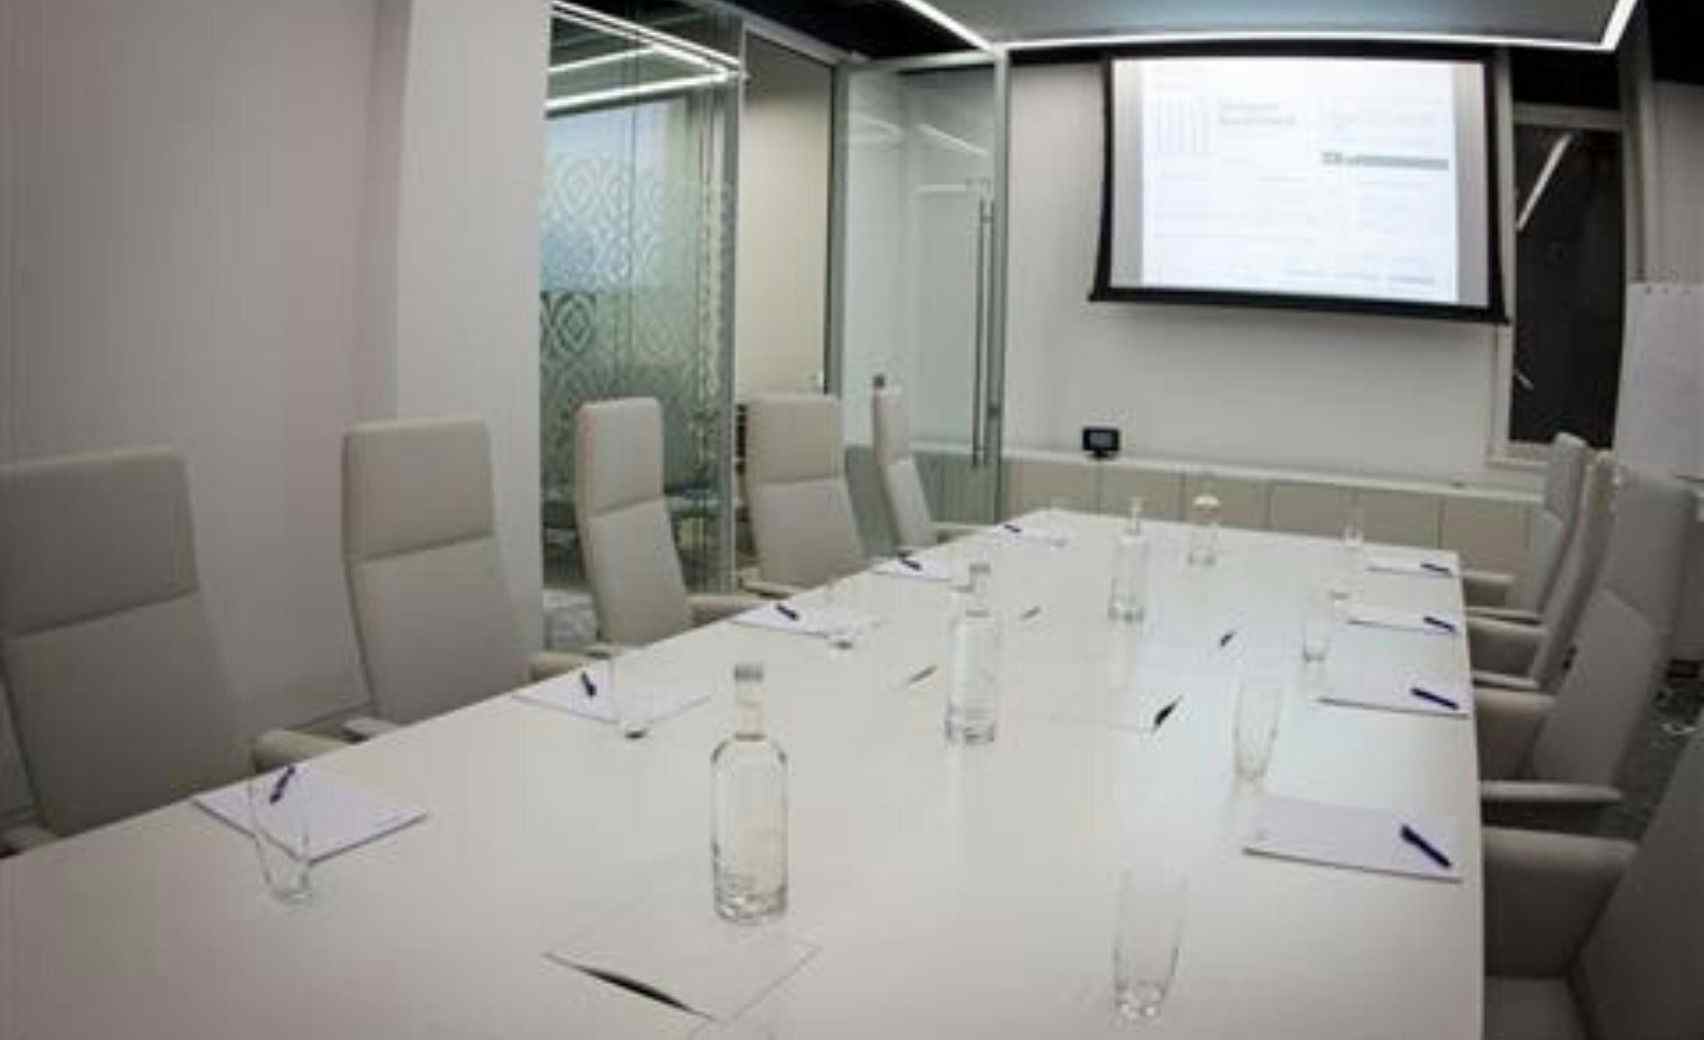 Ground Floor Meeting Room 18, 30 Euston Square